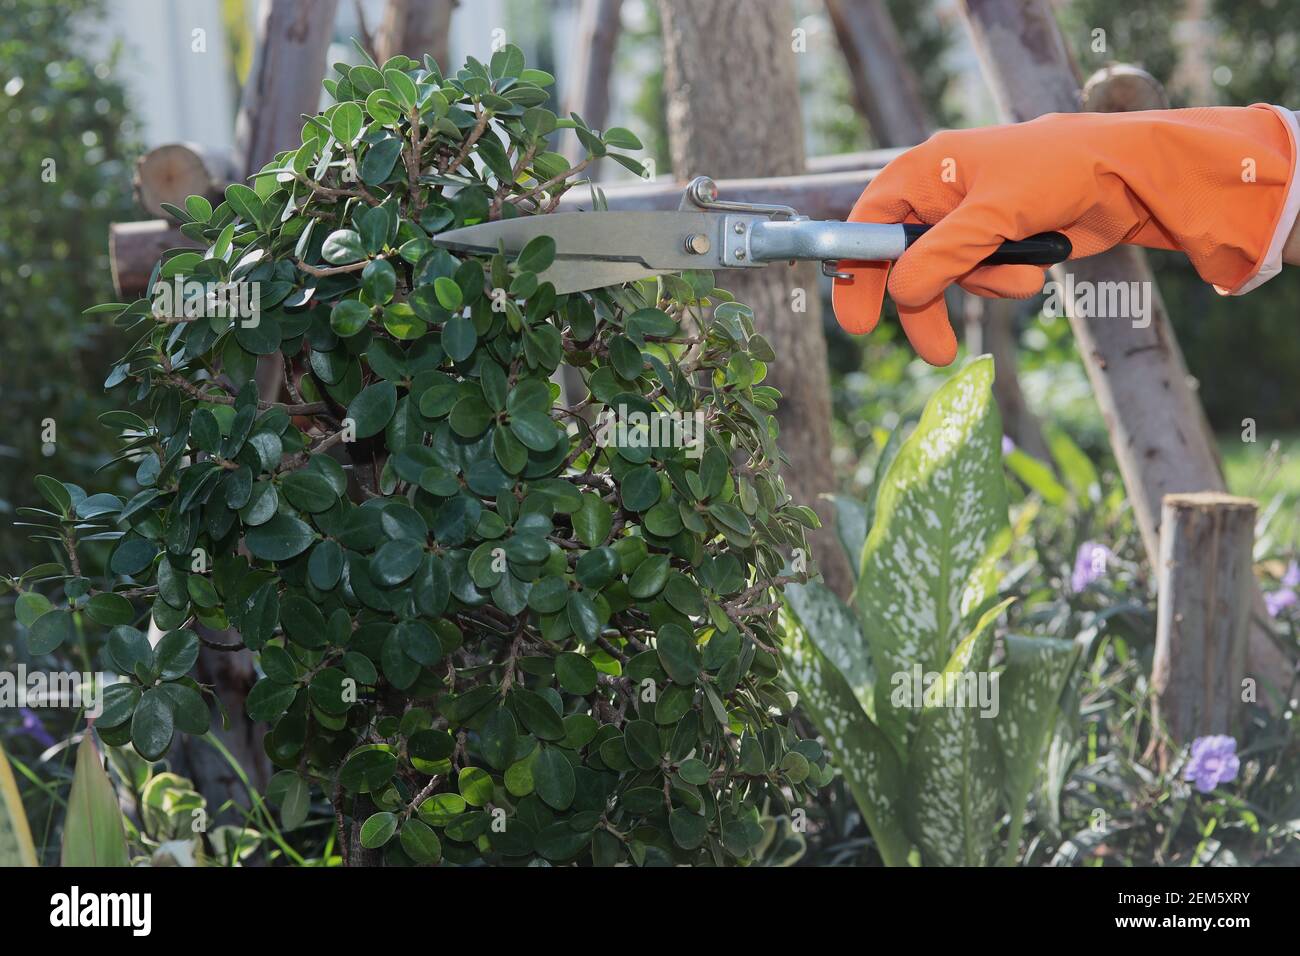 Maison décoration de jardin: Porter des gants en caoutchouc orange pour ramasser des ciseaux à strel pour décorer les branches de l'arbre dans le jardin. Banque D'Images